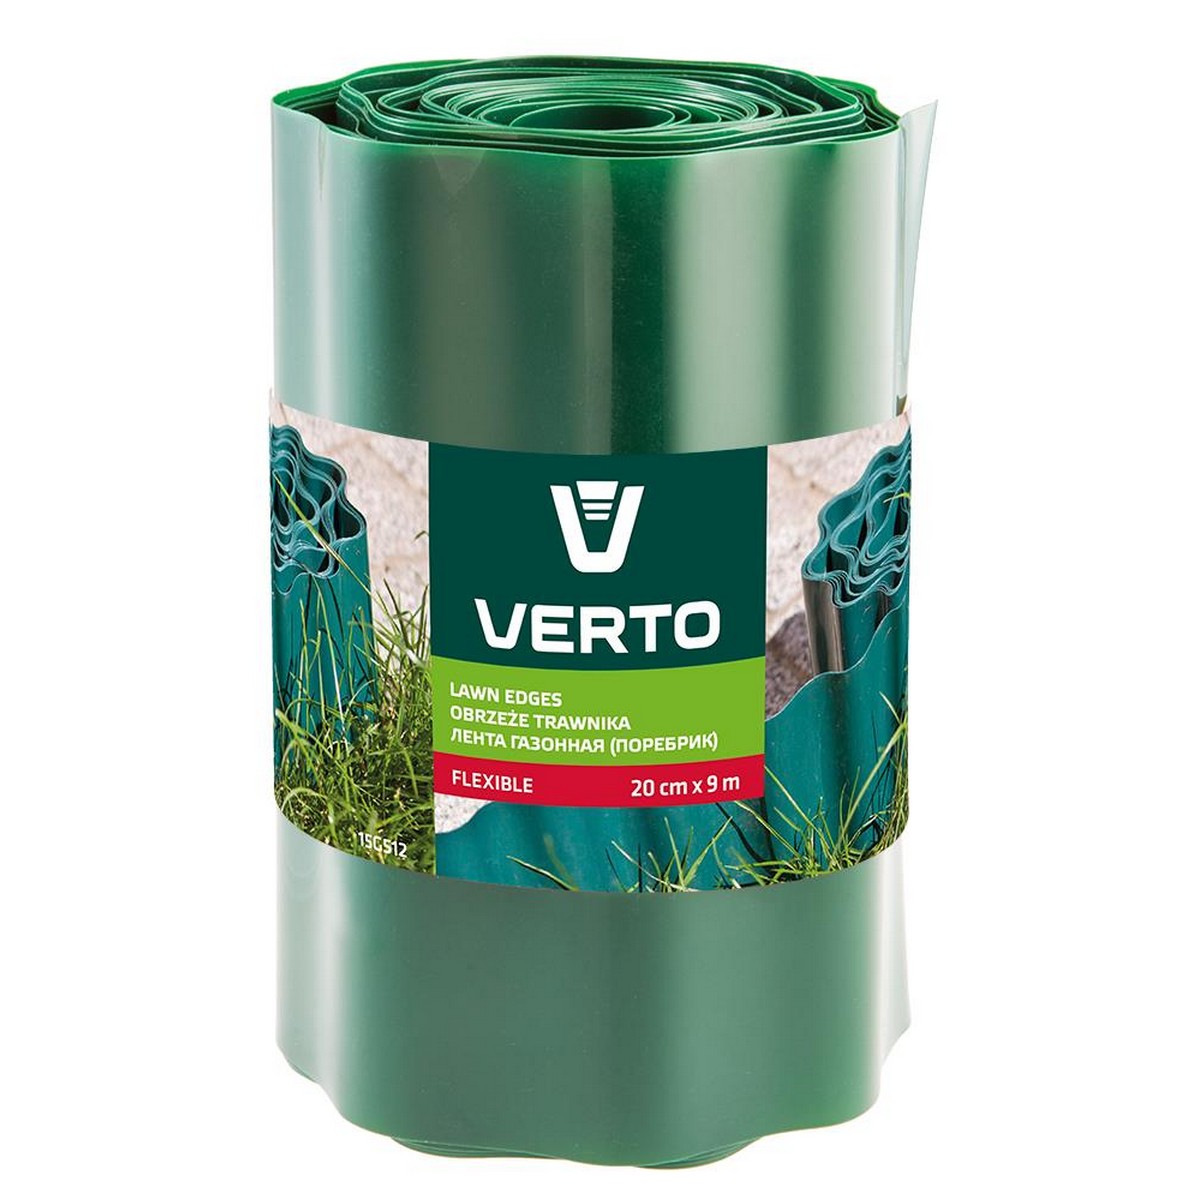 Купить лента газонная Verto 15G512 в Черкассах